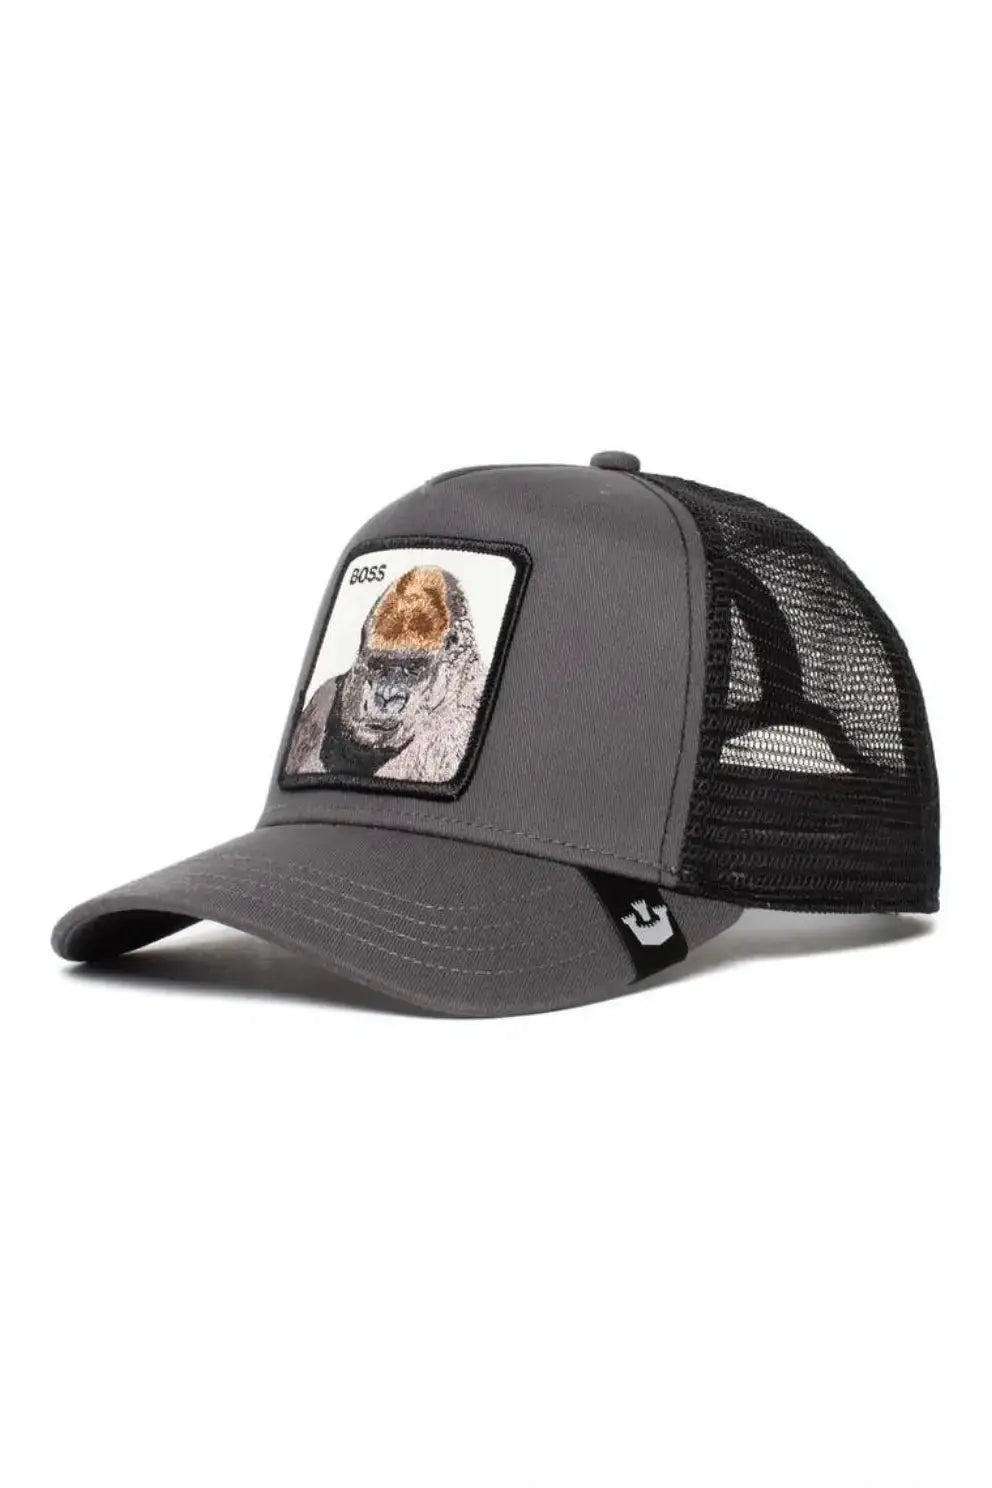 GOORIN - כובע מצחייה THE BOSS בצבע אפור - MASHBIR//365